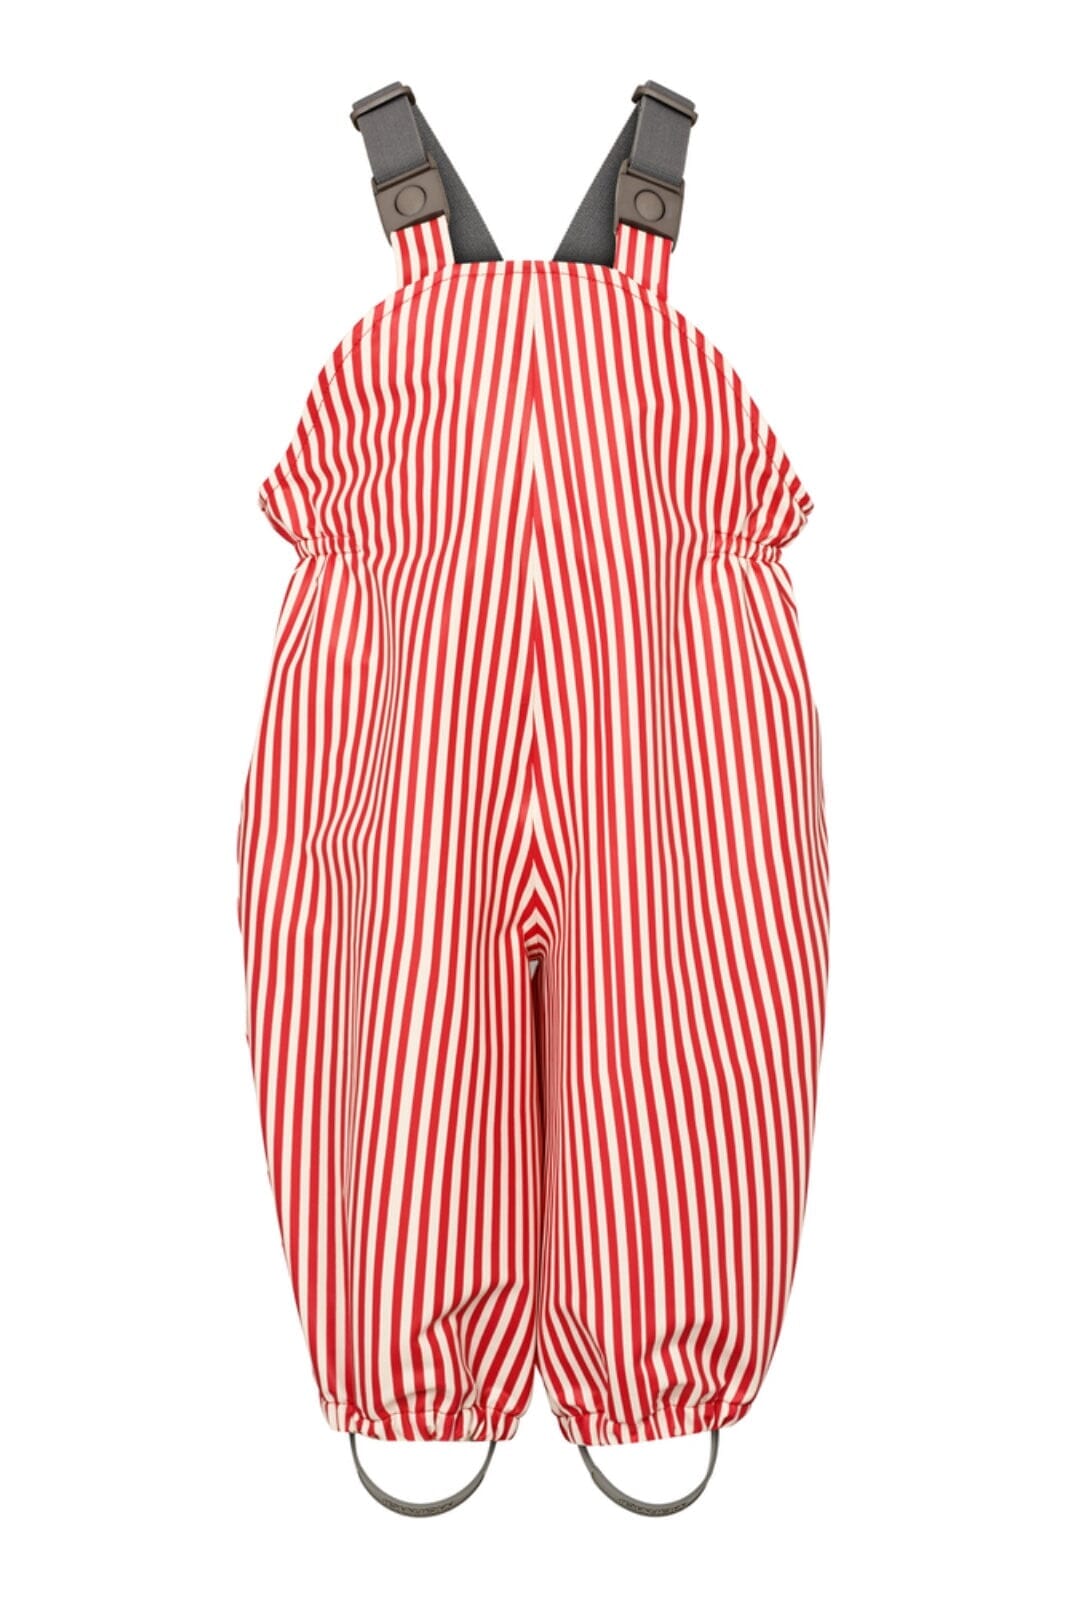 MarMar - Rainwear Set Oddy - Red Dew Stripe 1537 Regntøj 